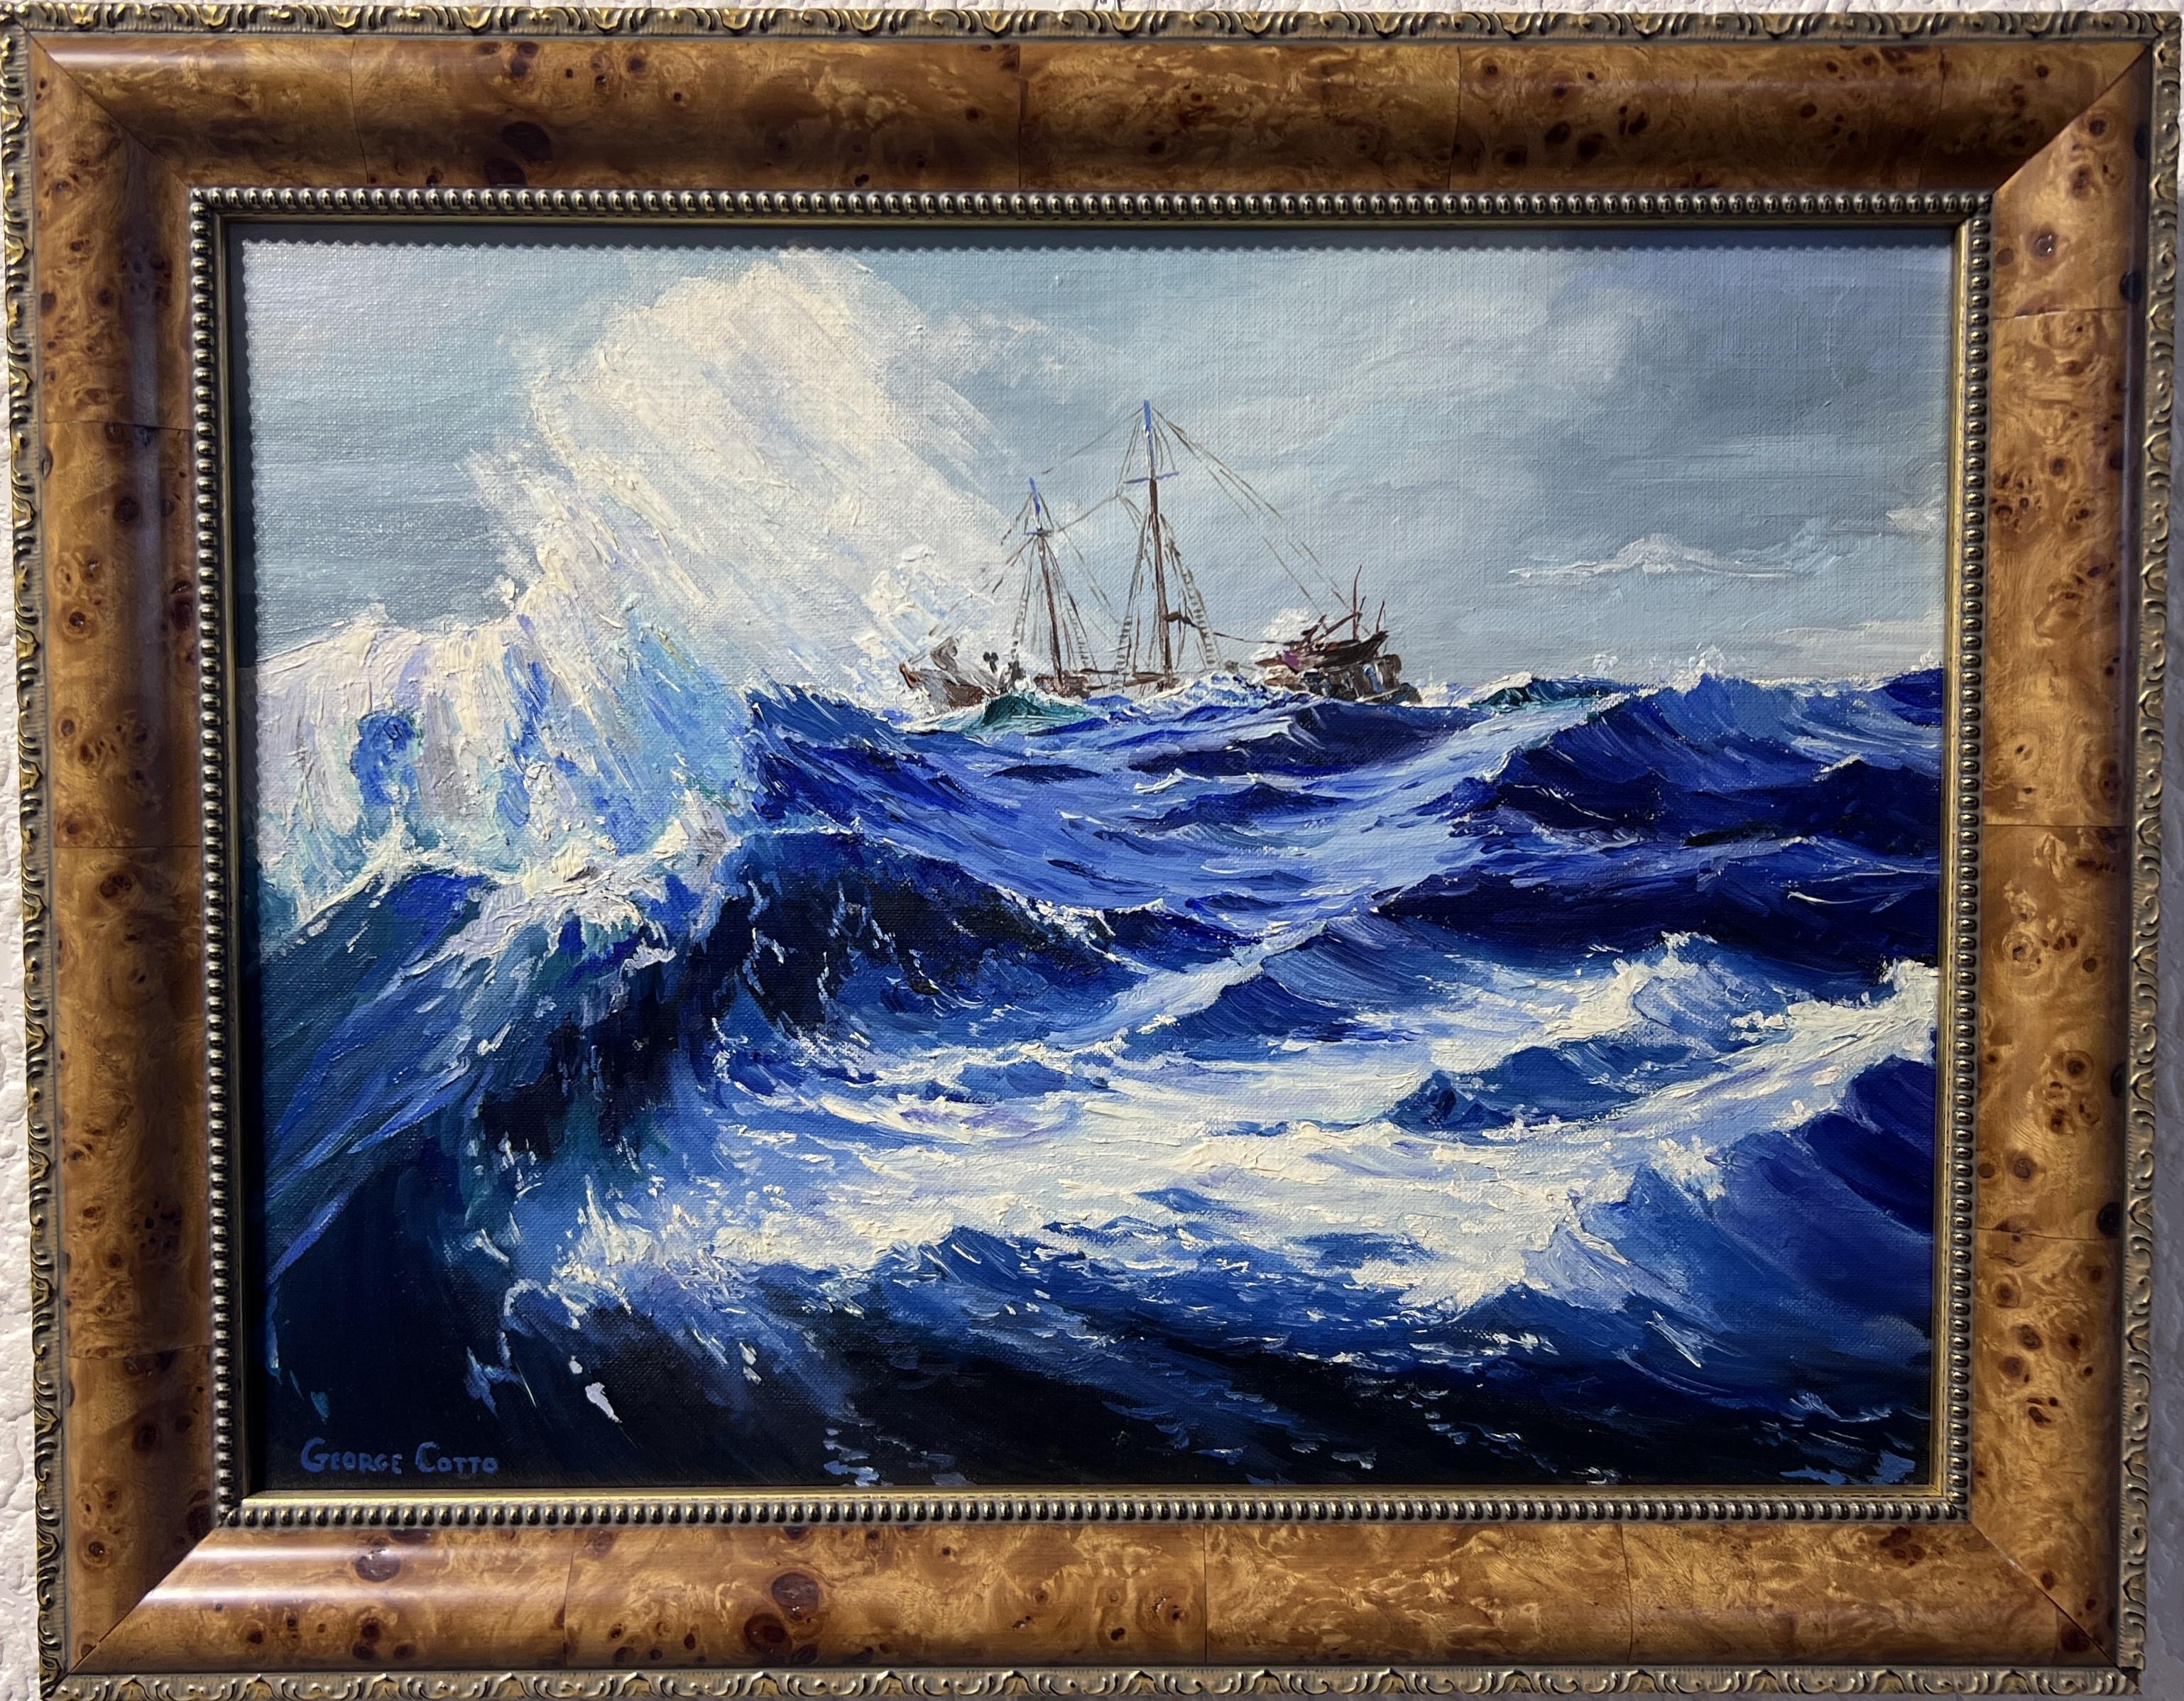 Il s'agit d'une peinture à l'huile originale sur toile représentant  Navires à voile sur l'océan déchaîné. 

Le cadre mesure 19" x 15" et la peinture mesure 16" x 12". 

Joliment encadré. Bon état.
Veuillez voir les photos, les photos font partie de